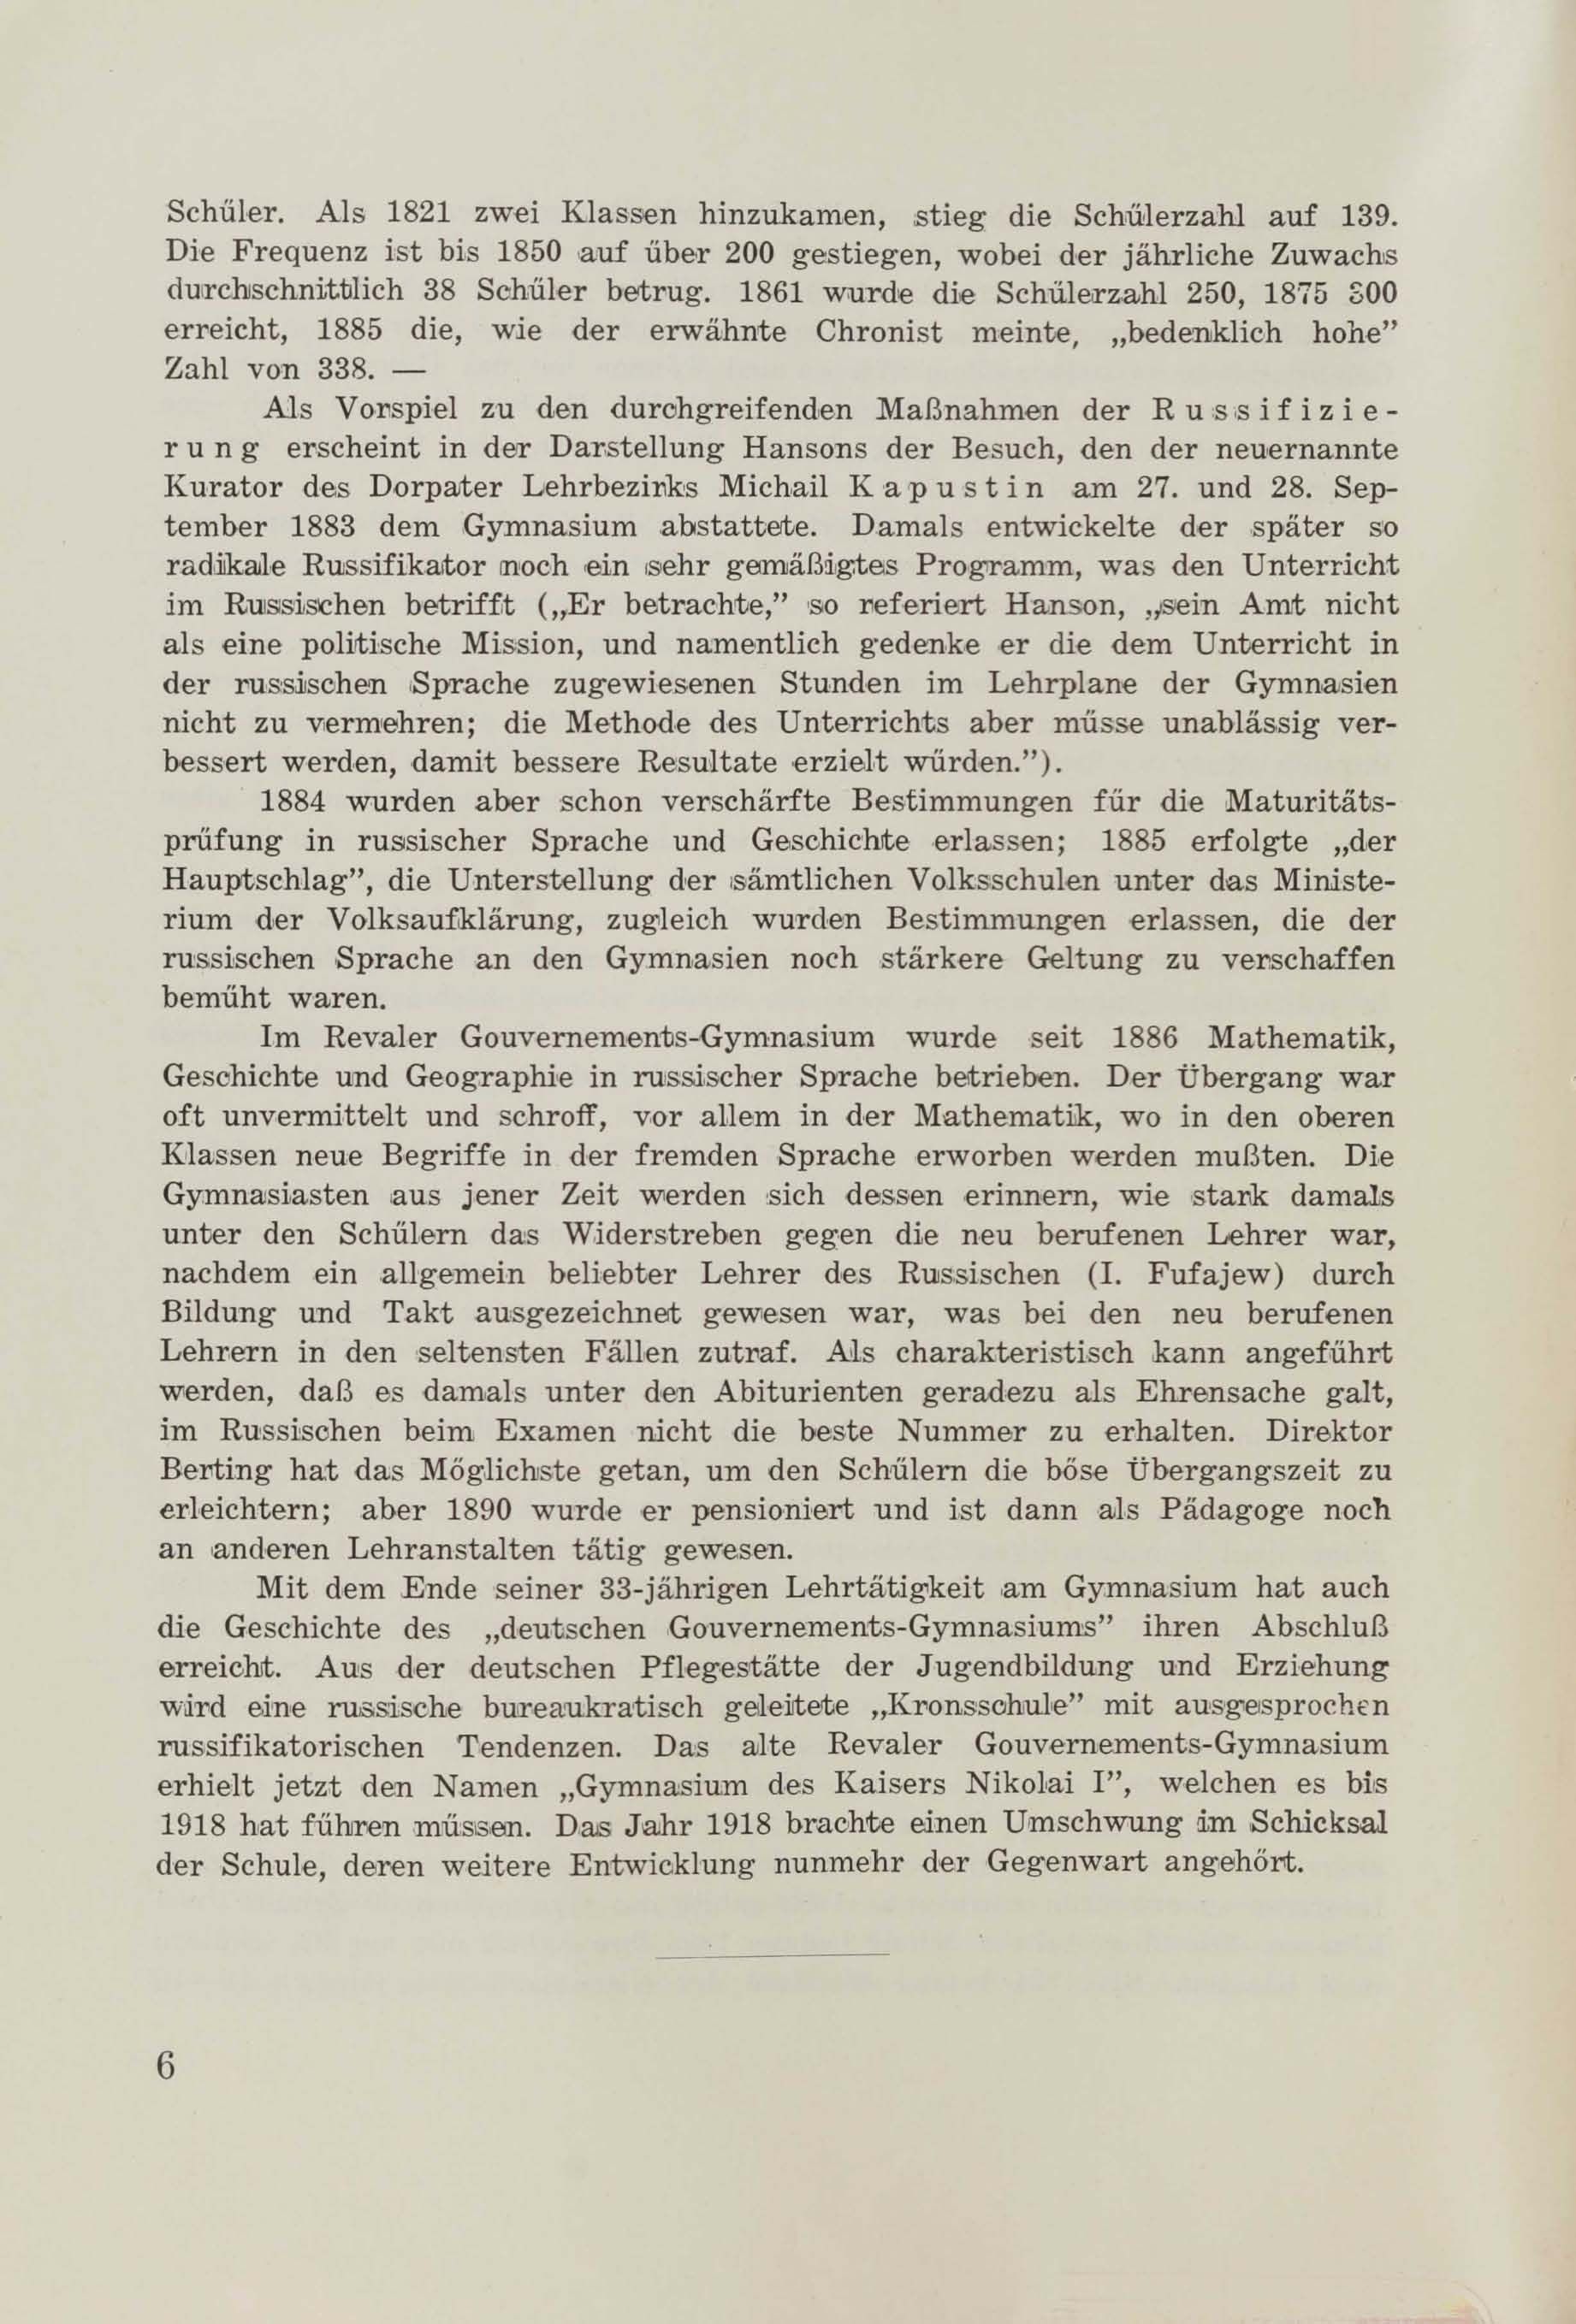 Schüler-Verzeichnis des Revalschen Gouvernements-Gymnasiums 1805–1890 (1931) | 17. (6) Haupttext